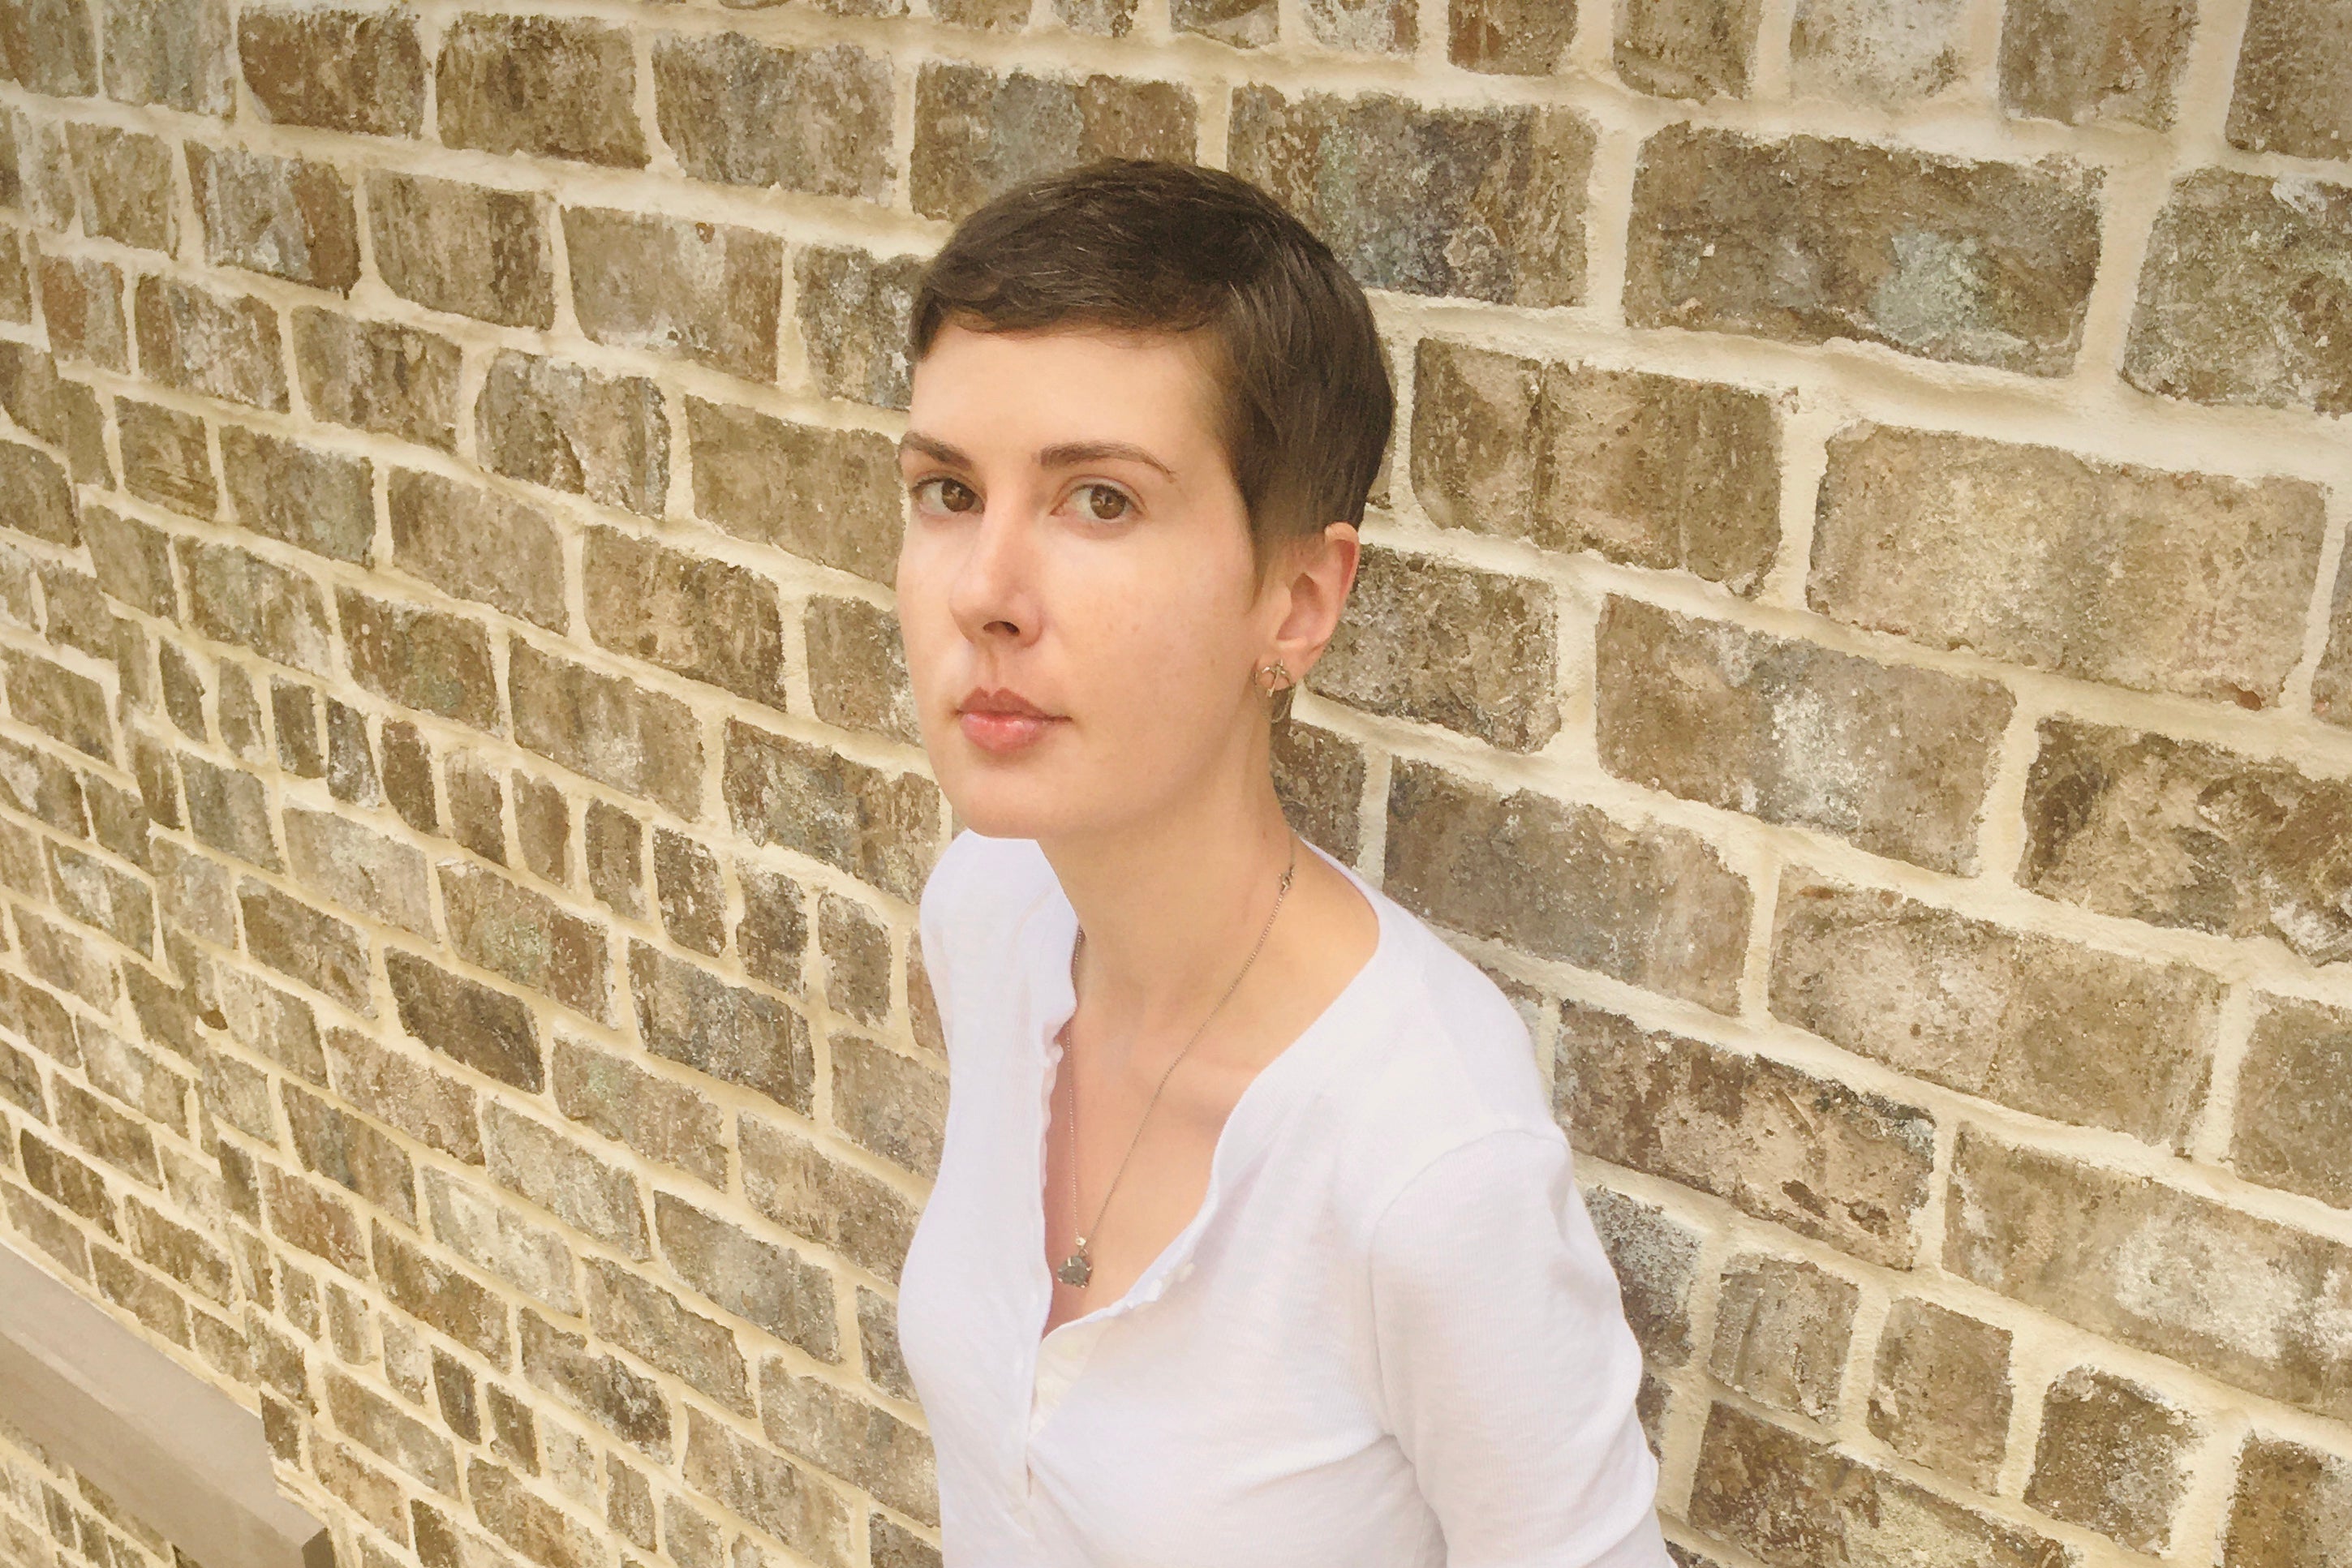 A woman in a white shirt leans against a brick wall.